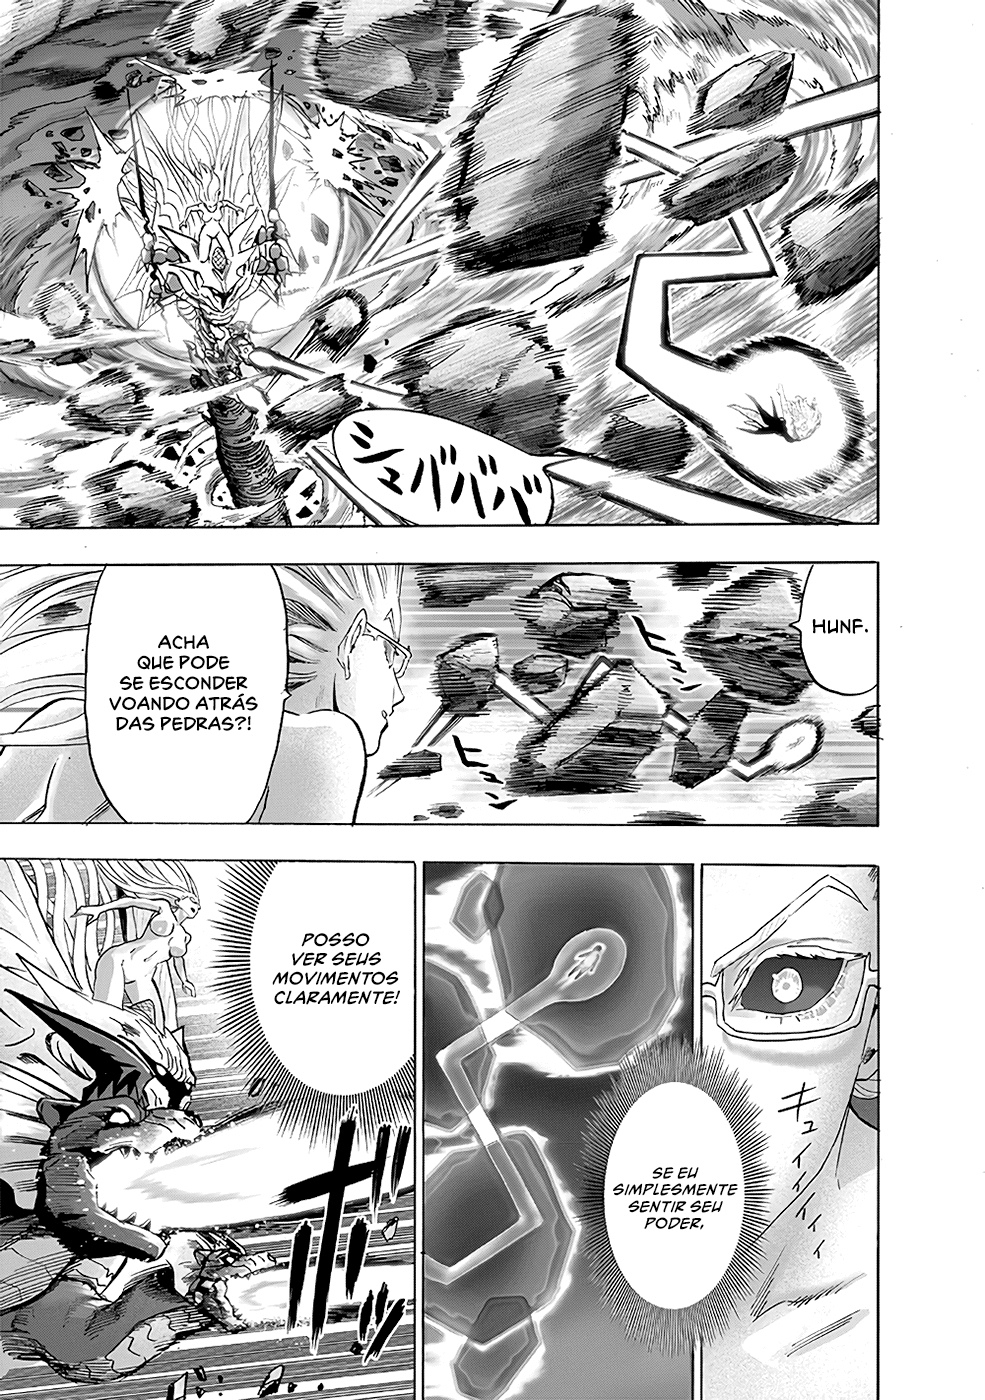 Quem no universo de Naruto seria capaz de derrotar Tatsumaki? - Página 3 1710